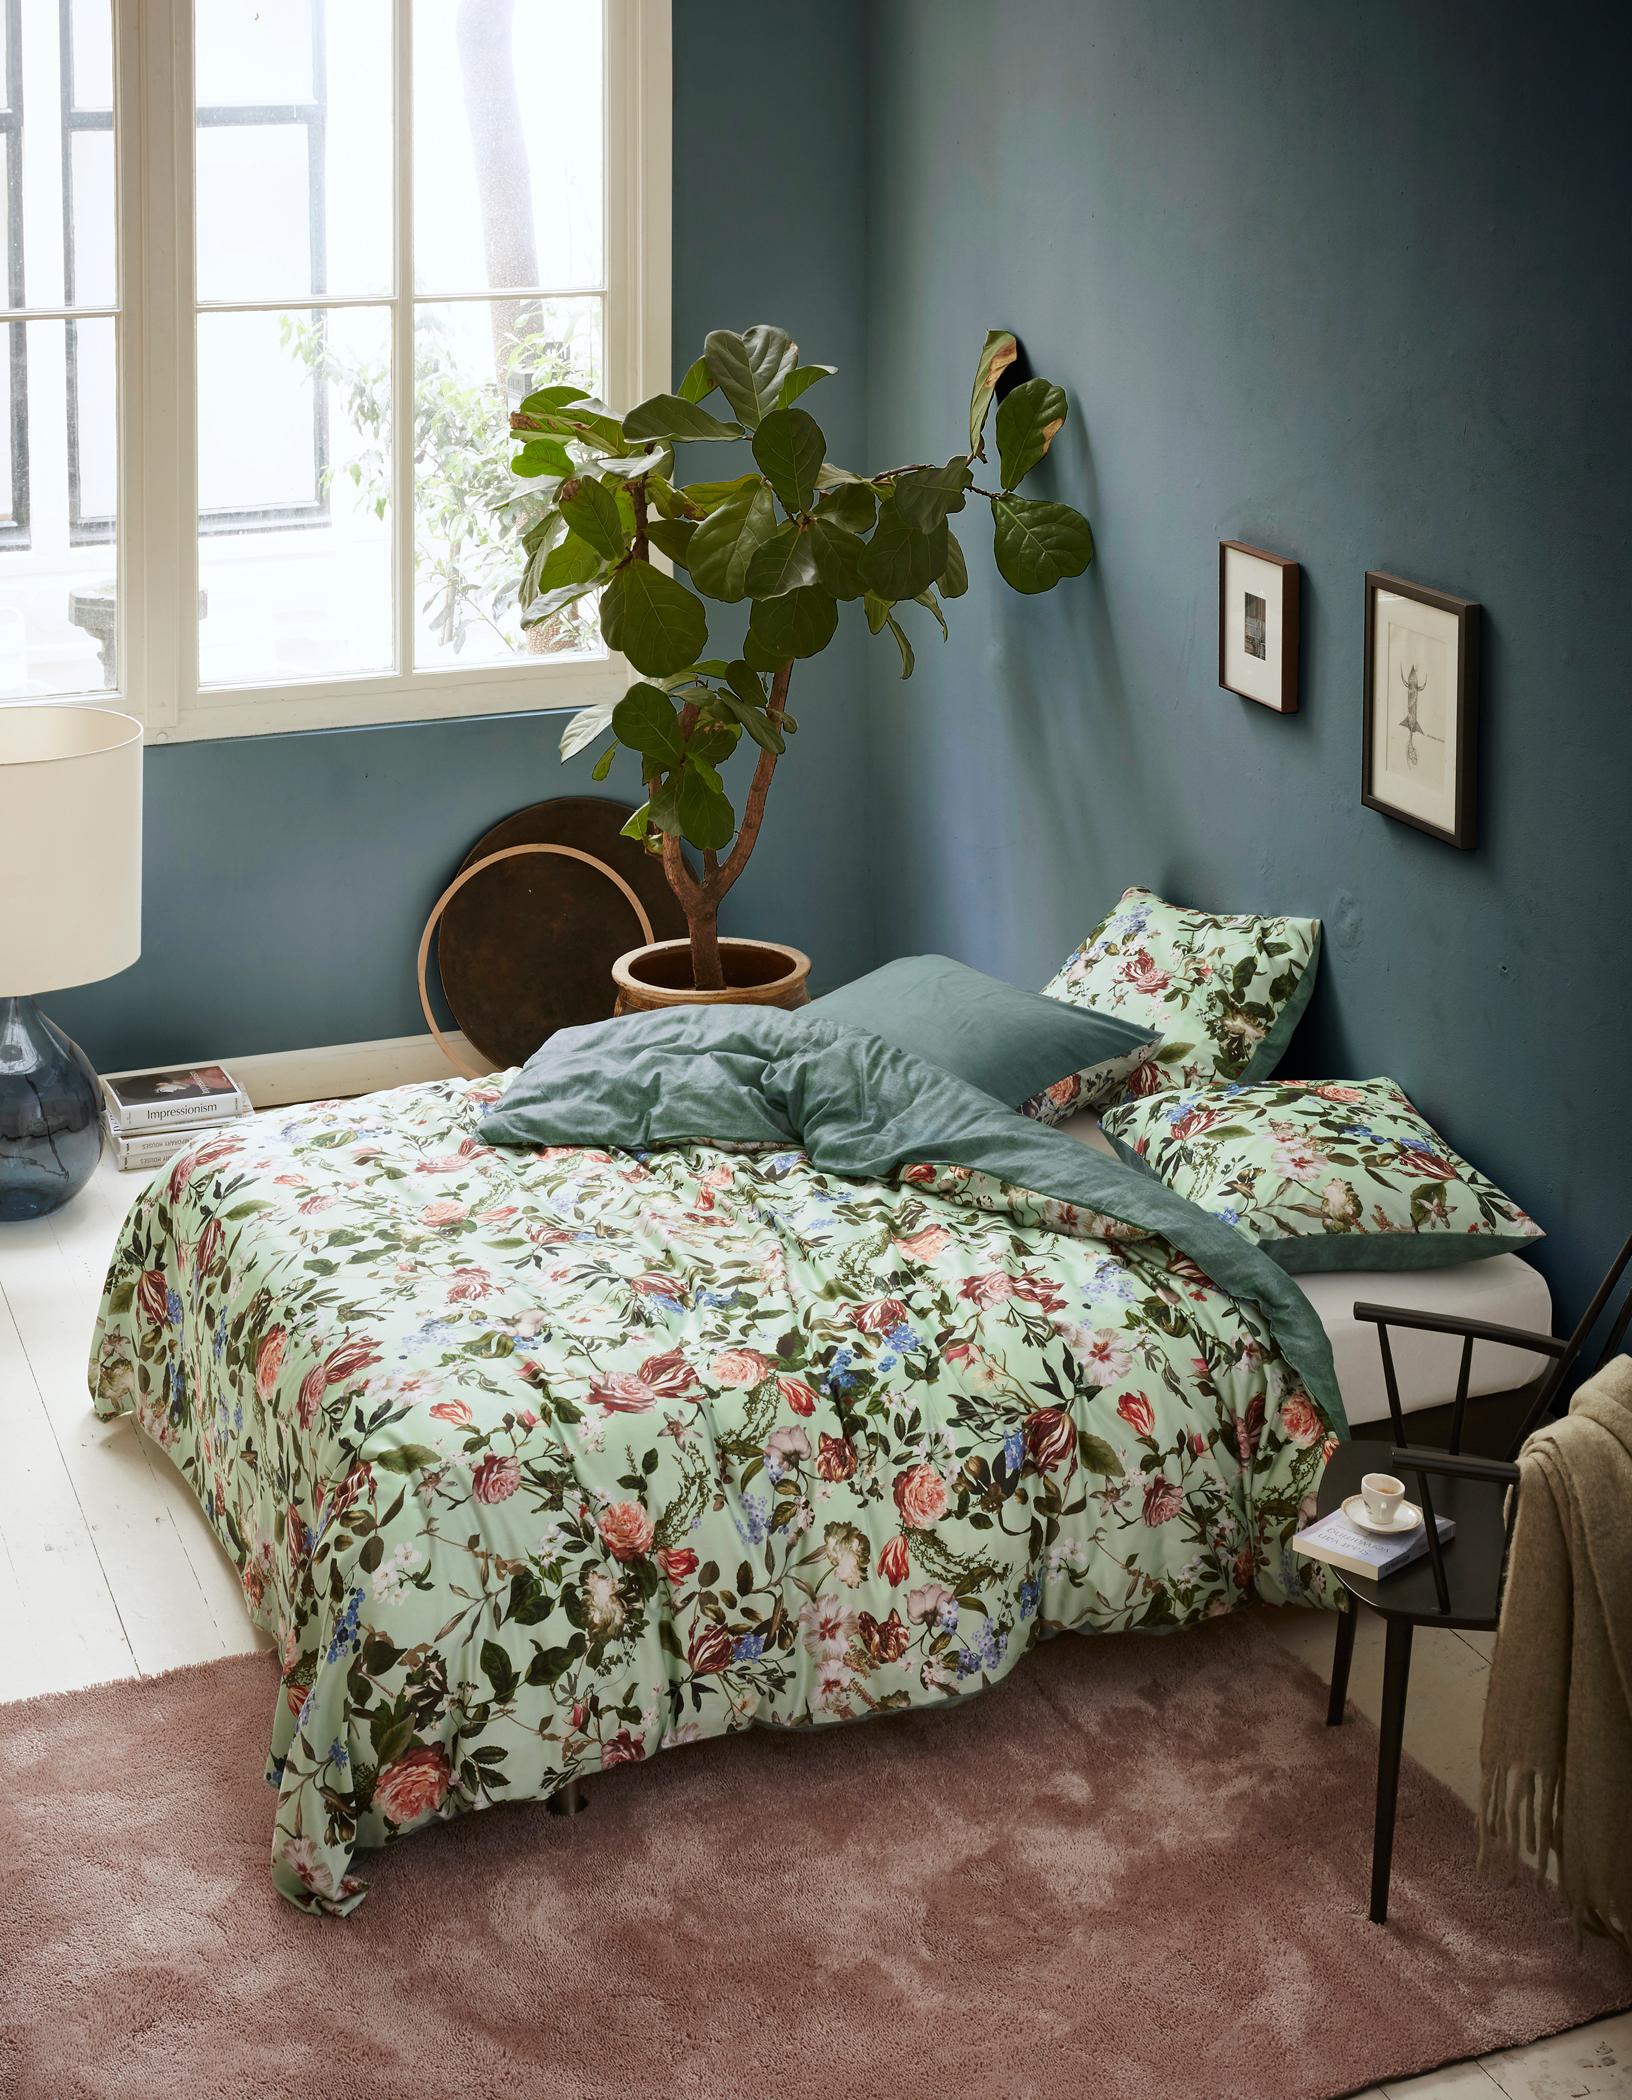 Bettwäsche mit floralem Muster #bett #teppich #bettwäsche #grauewandfarbe #zimmergestaltung ©Essenza Home/Essenza